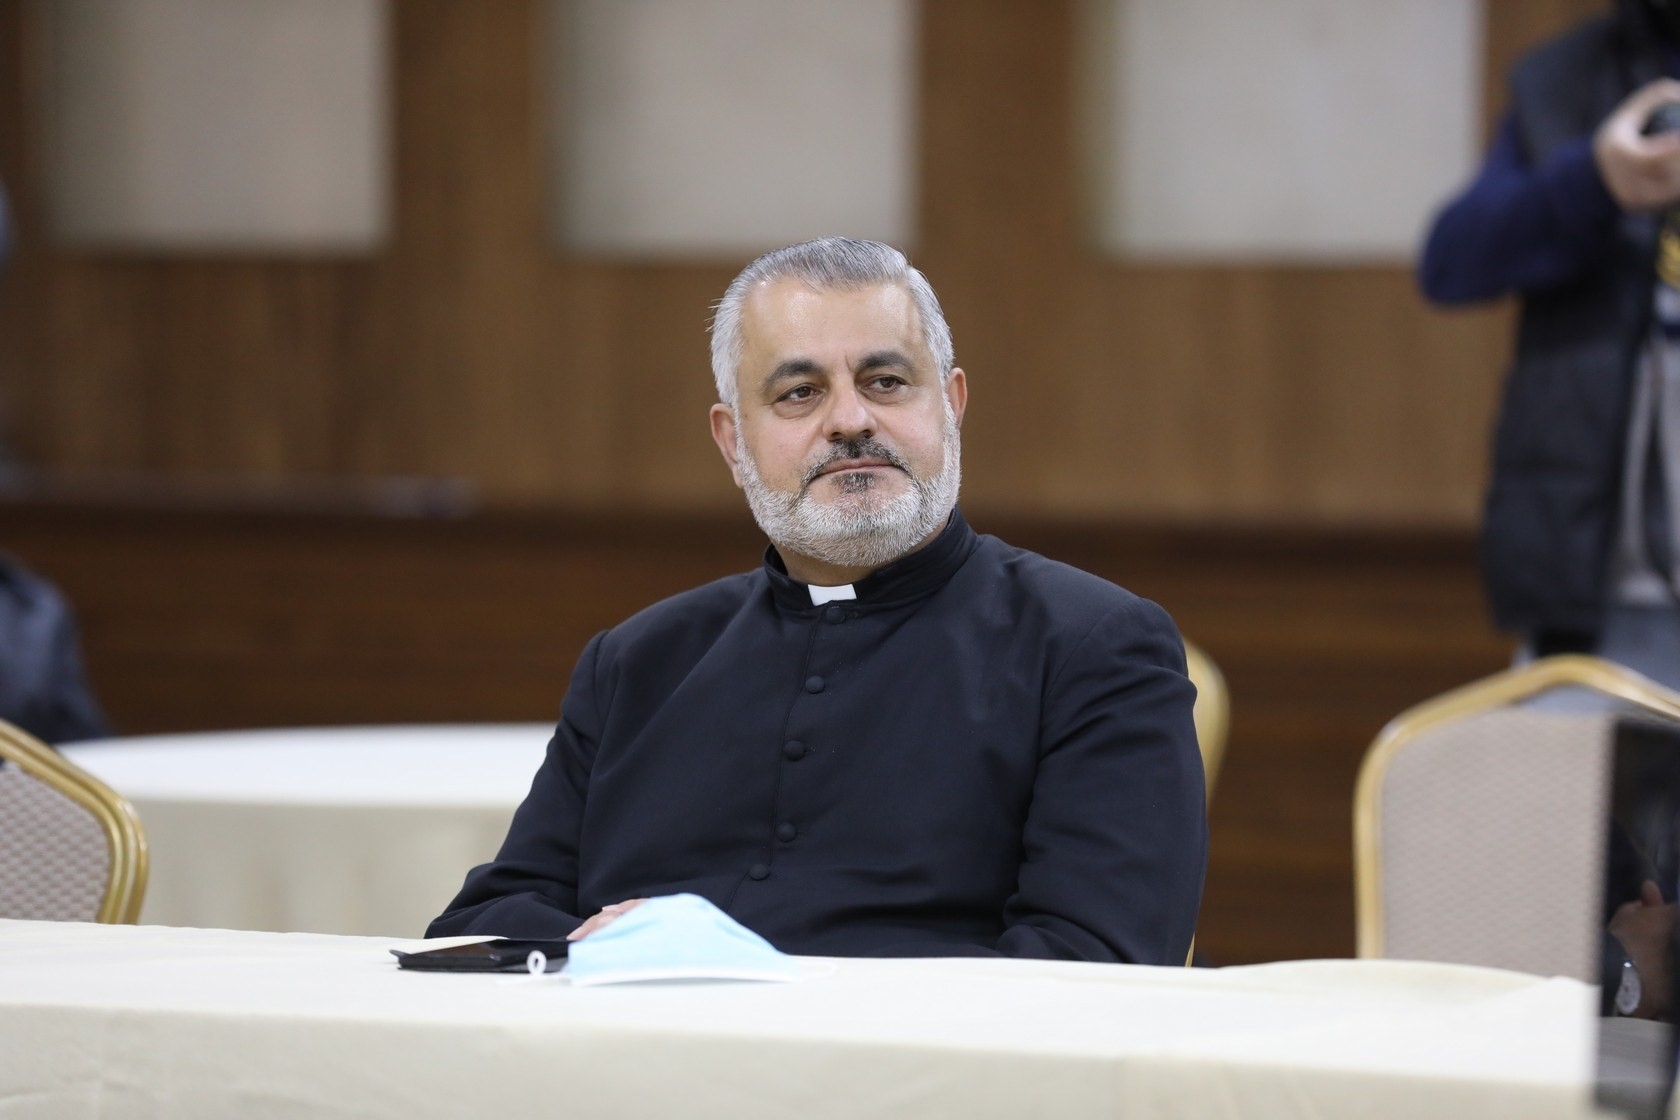 “Ha venido a restablecer la confianza de la gente en los demás": El padre Rifat Bader habla de la visita del Papa Francisco a Irak